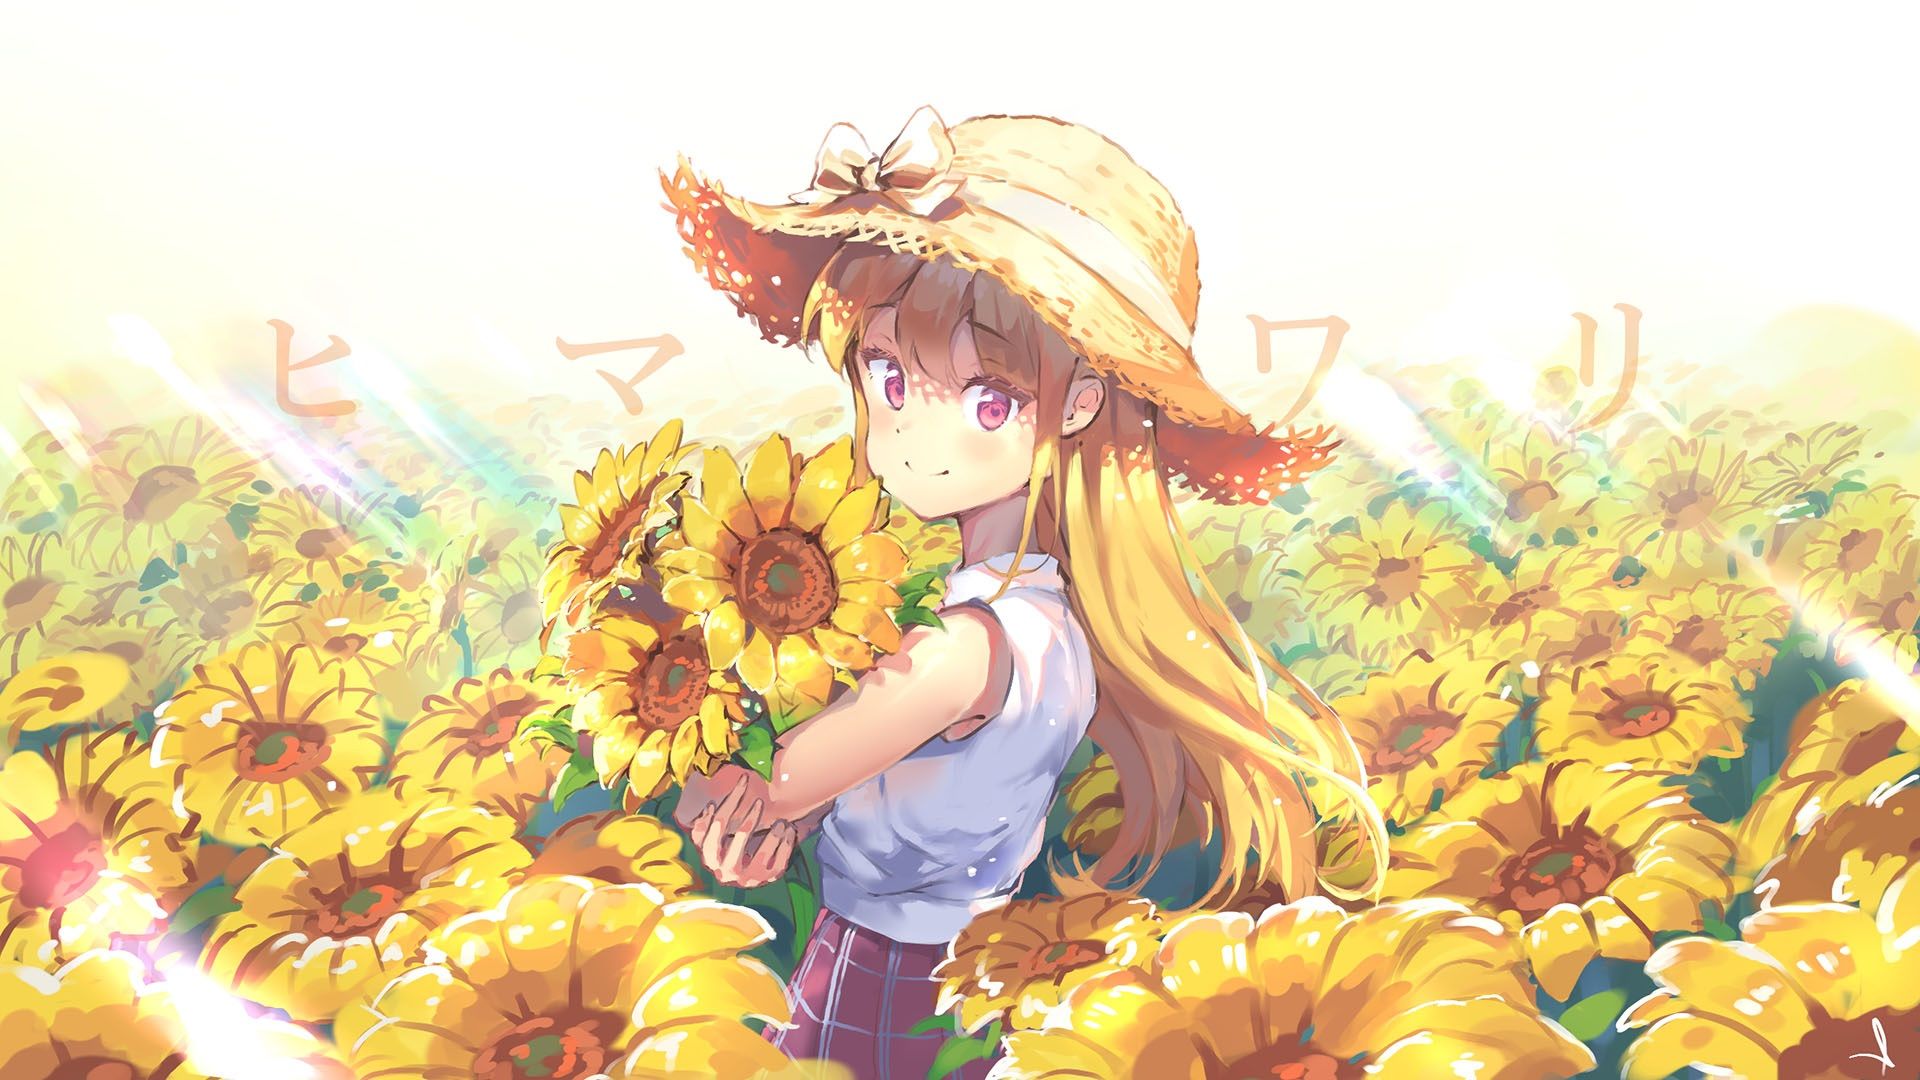 Sunflower Anime Girl Wallpapers - Wallpaper Cave